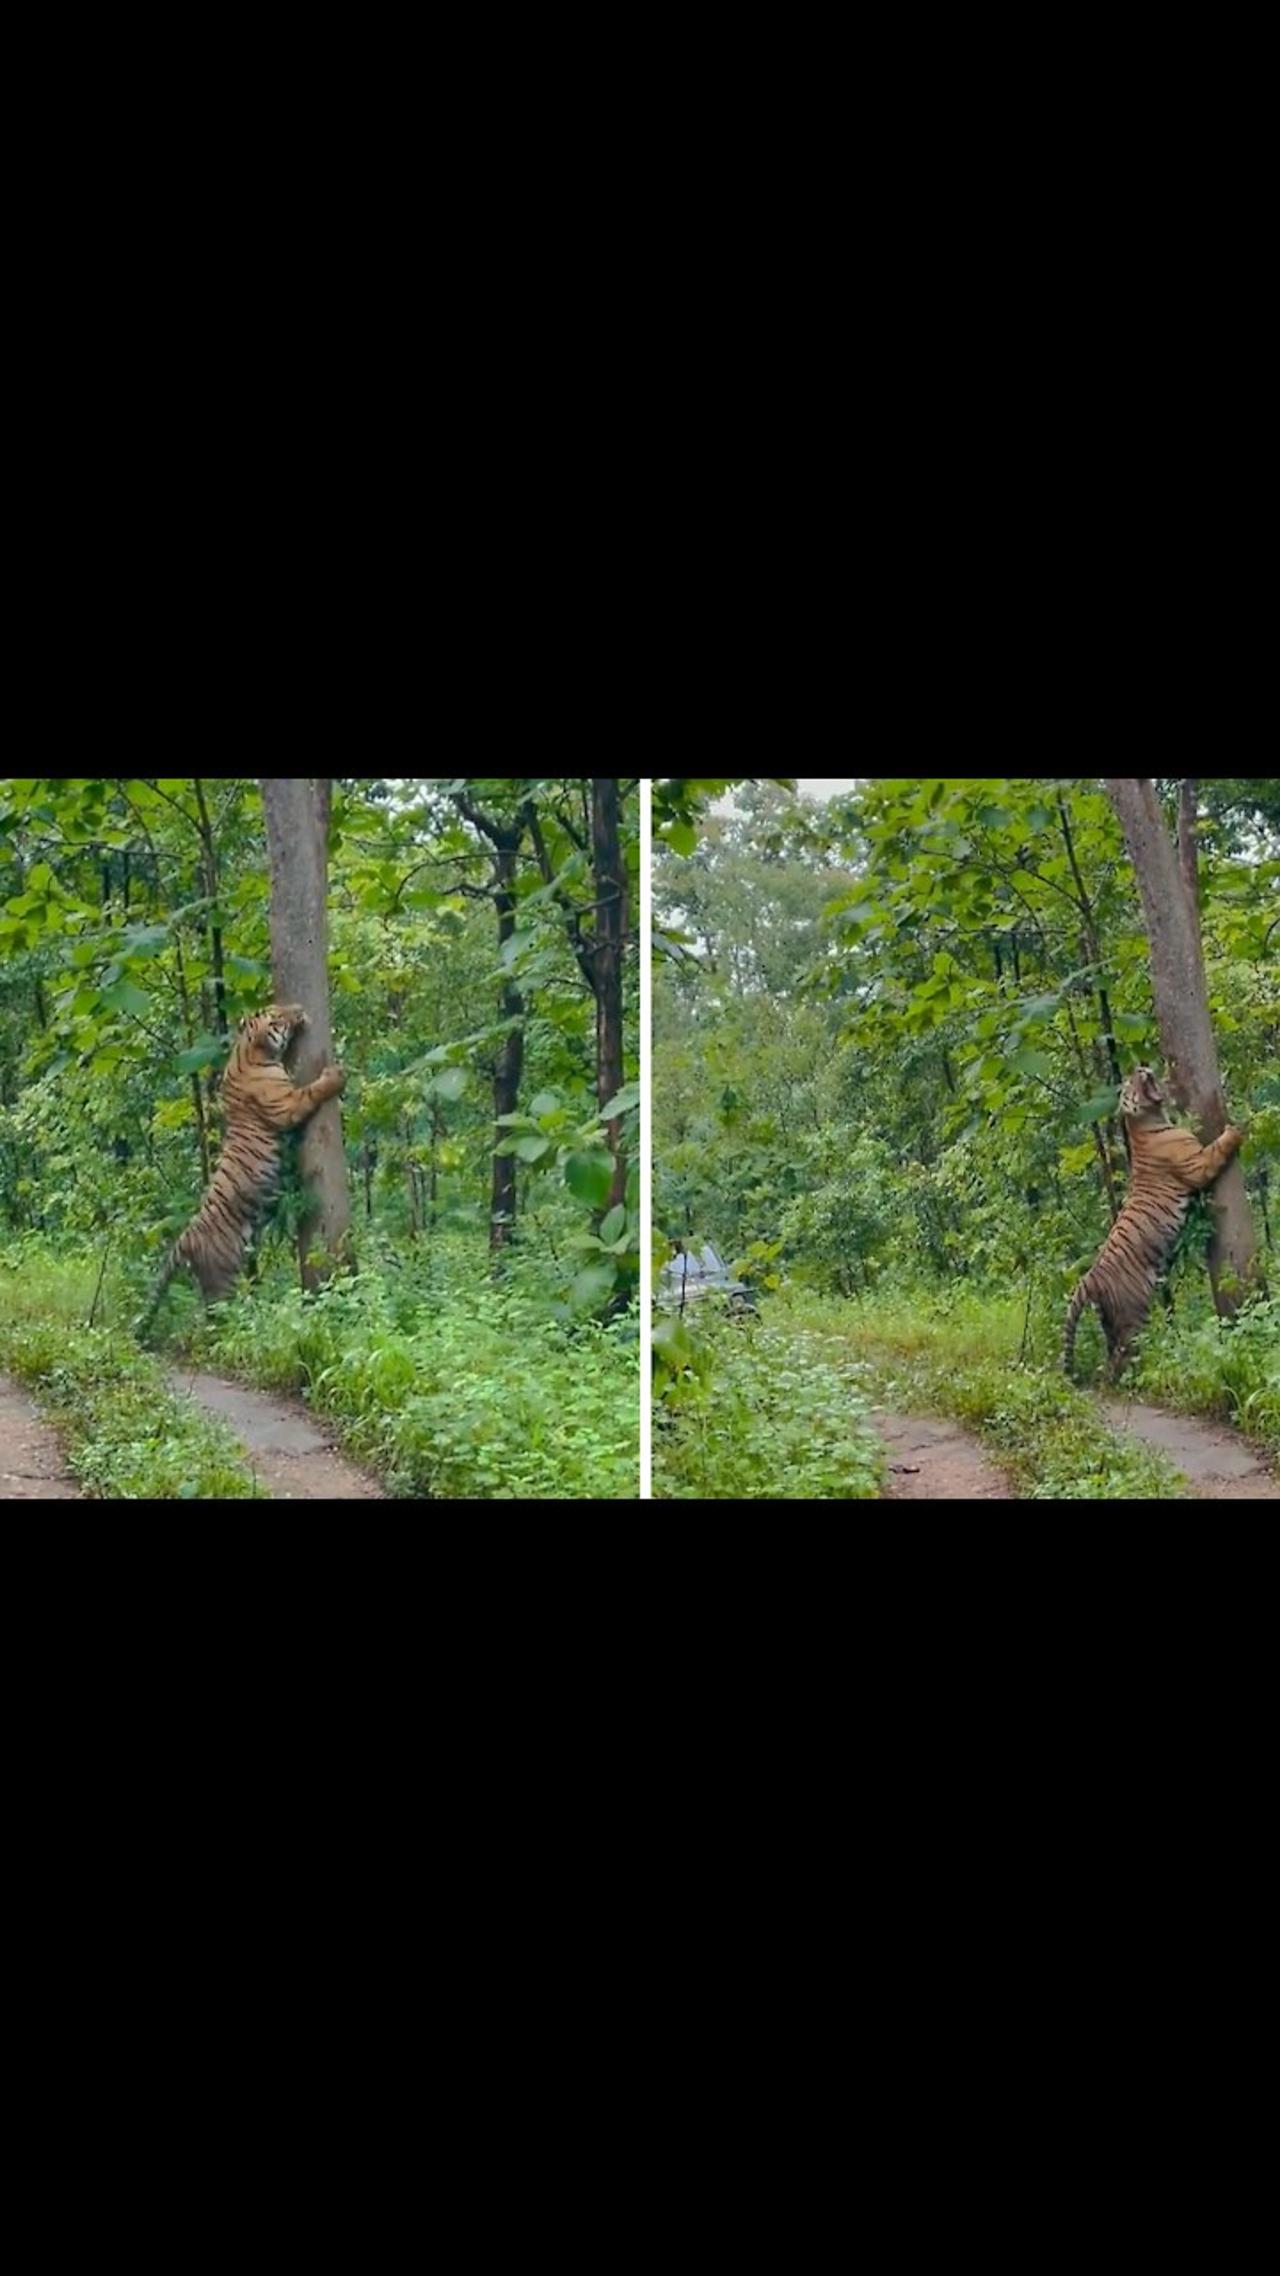 Huge tiger loves hugging trees in Indian national park